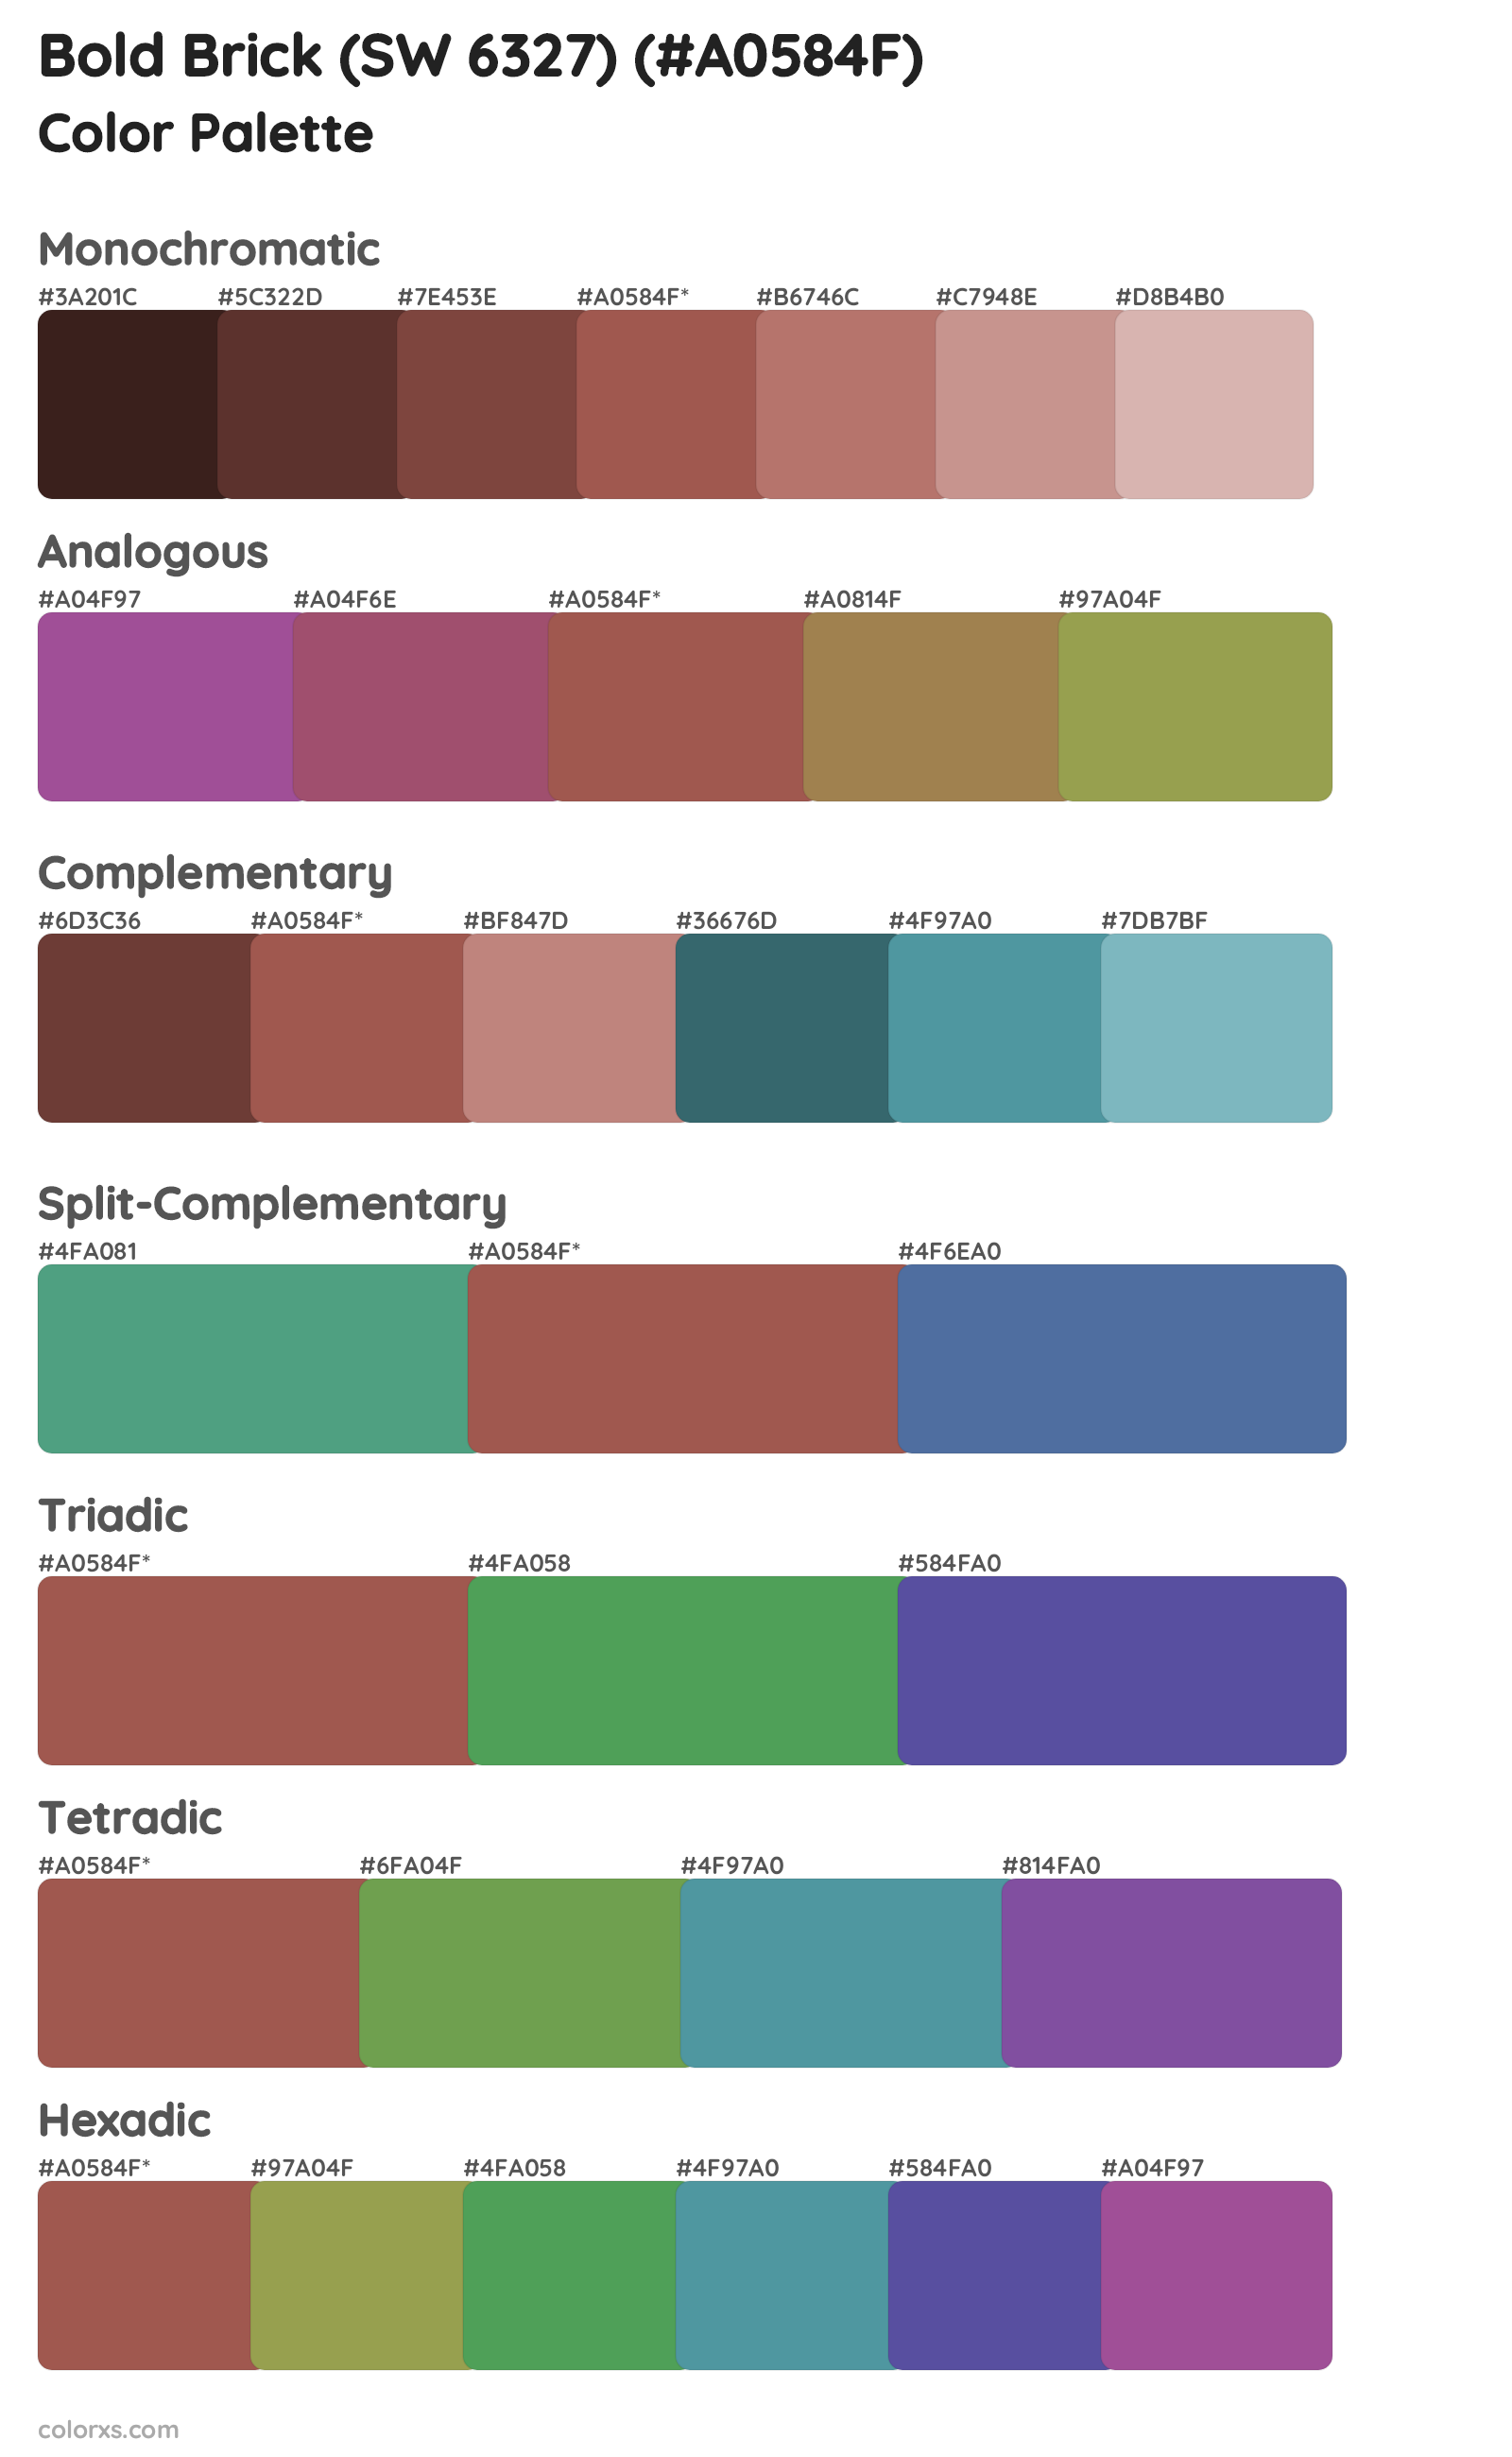 Bold Brick (SW 6327) Color Scheme Palettes